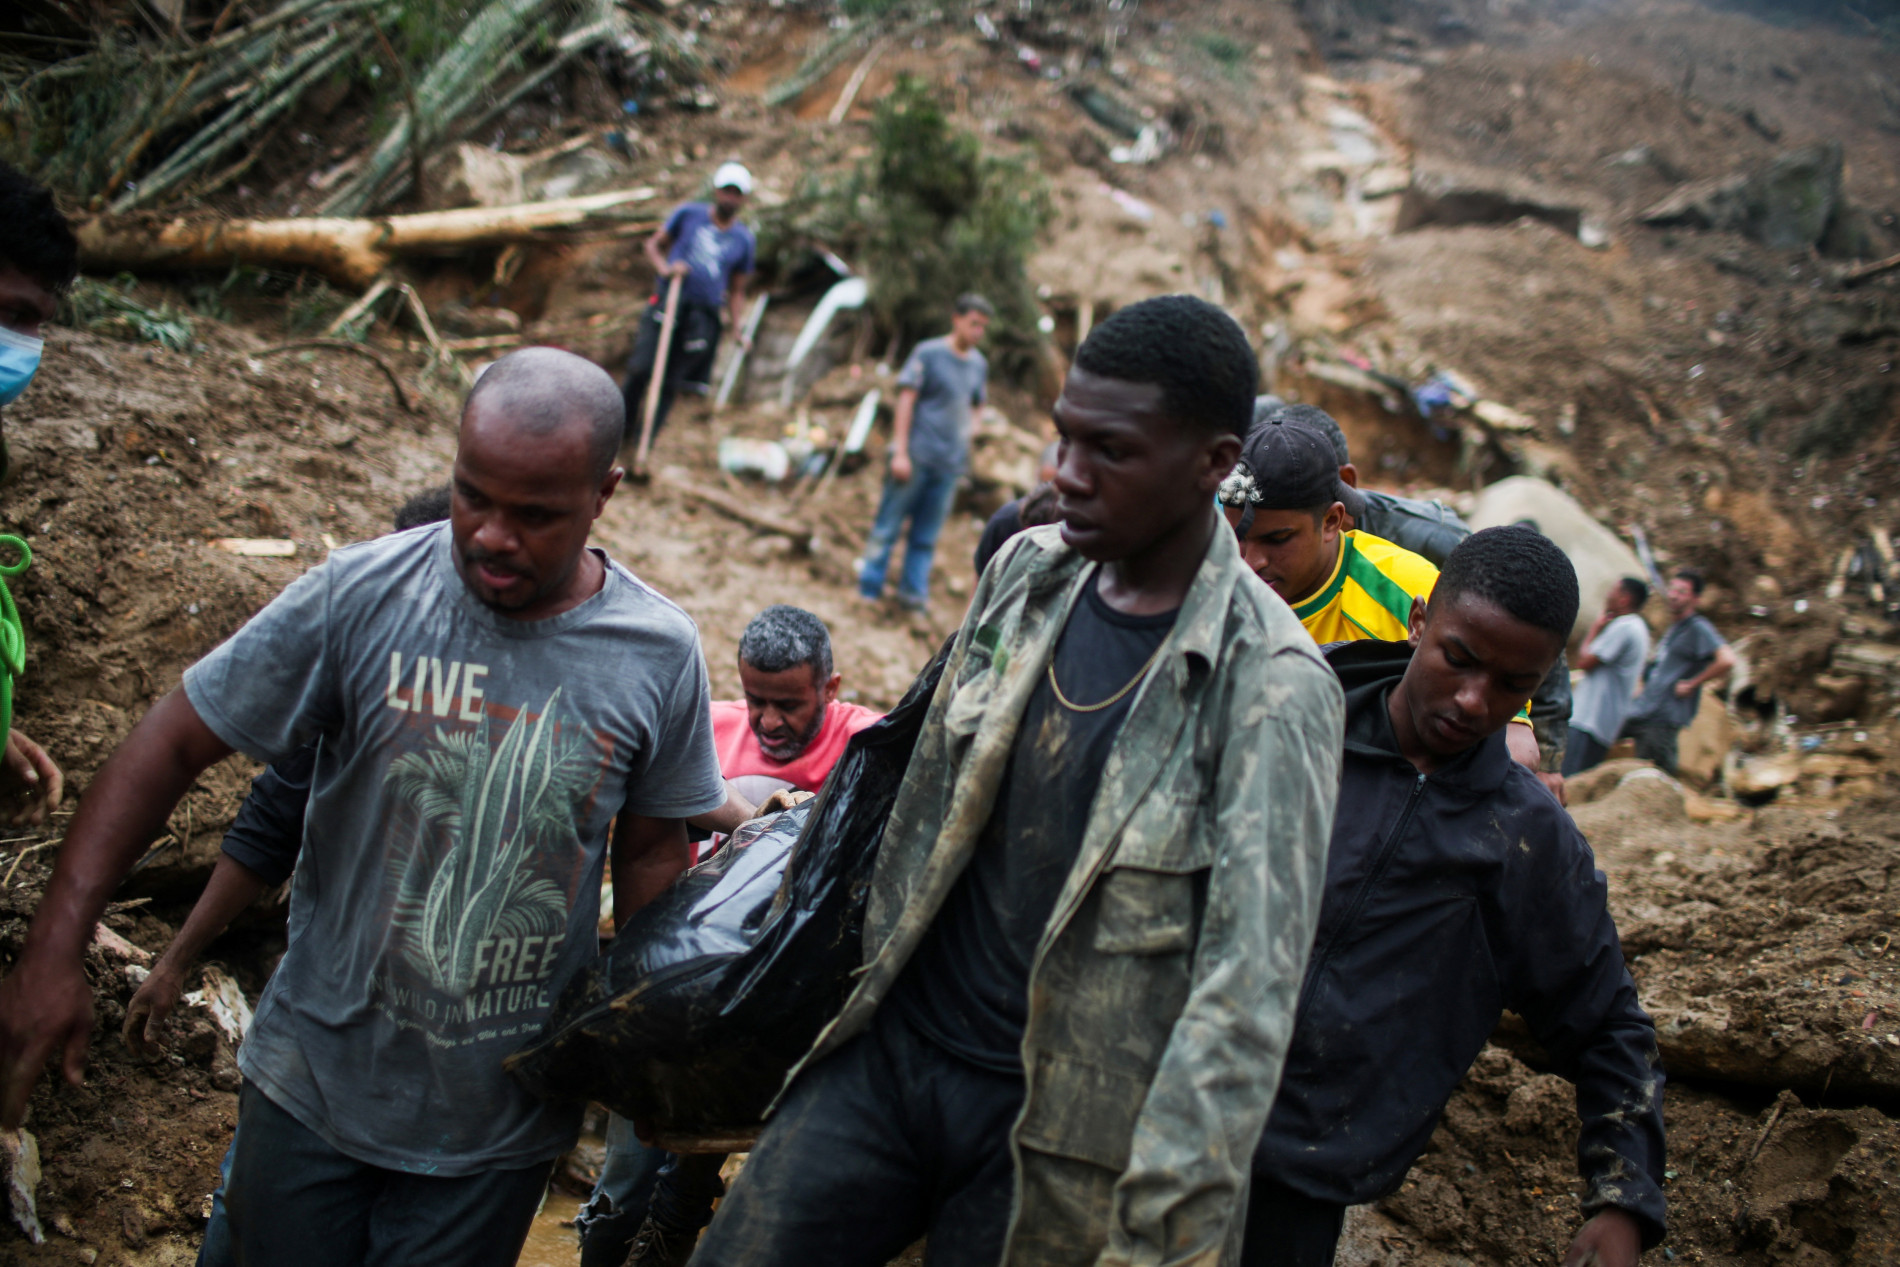 Lở đất kinh hoàng ở Brazil làm 94 người chết - 4